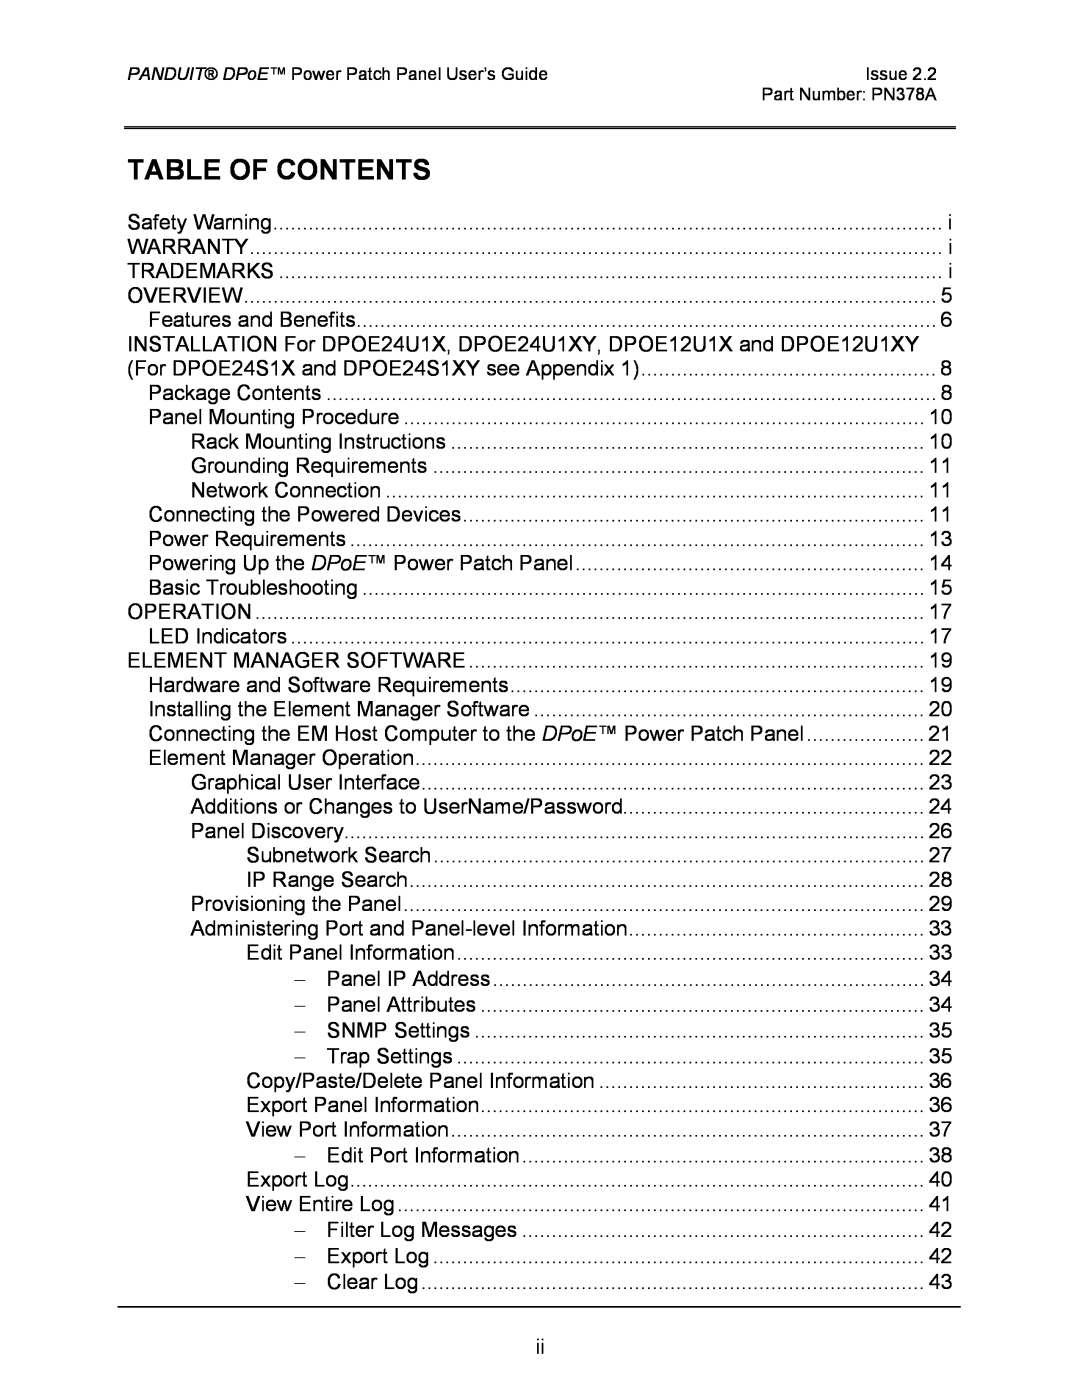 Panduit DPOE24U1XY, DPOE24S1XY, DPOE12U1XY manual Table Of Contents 